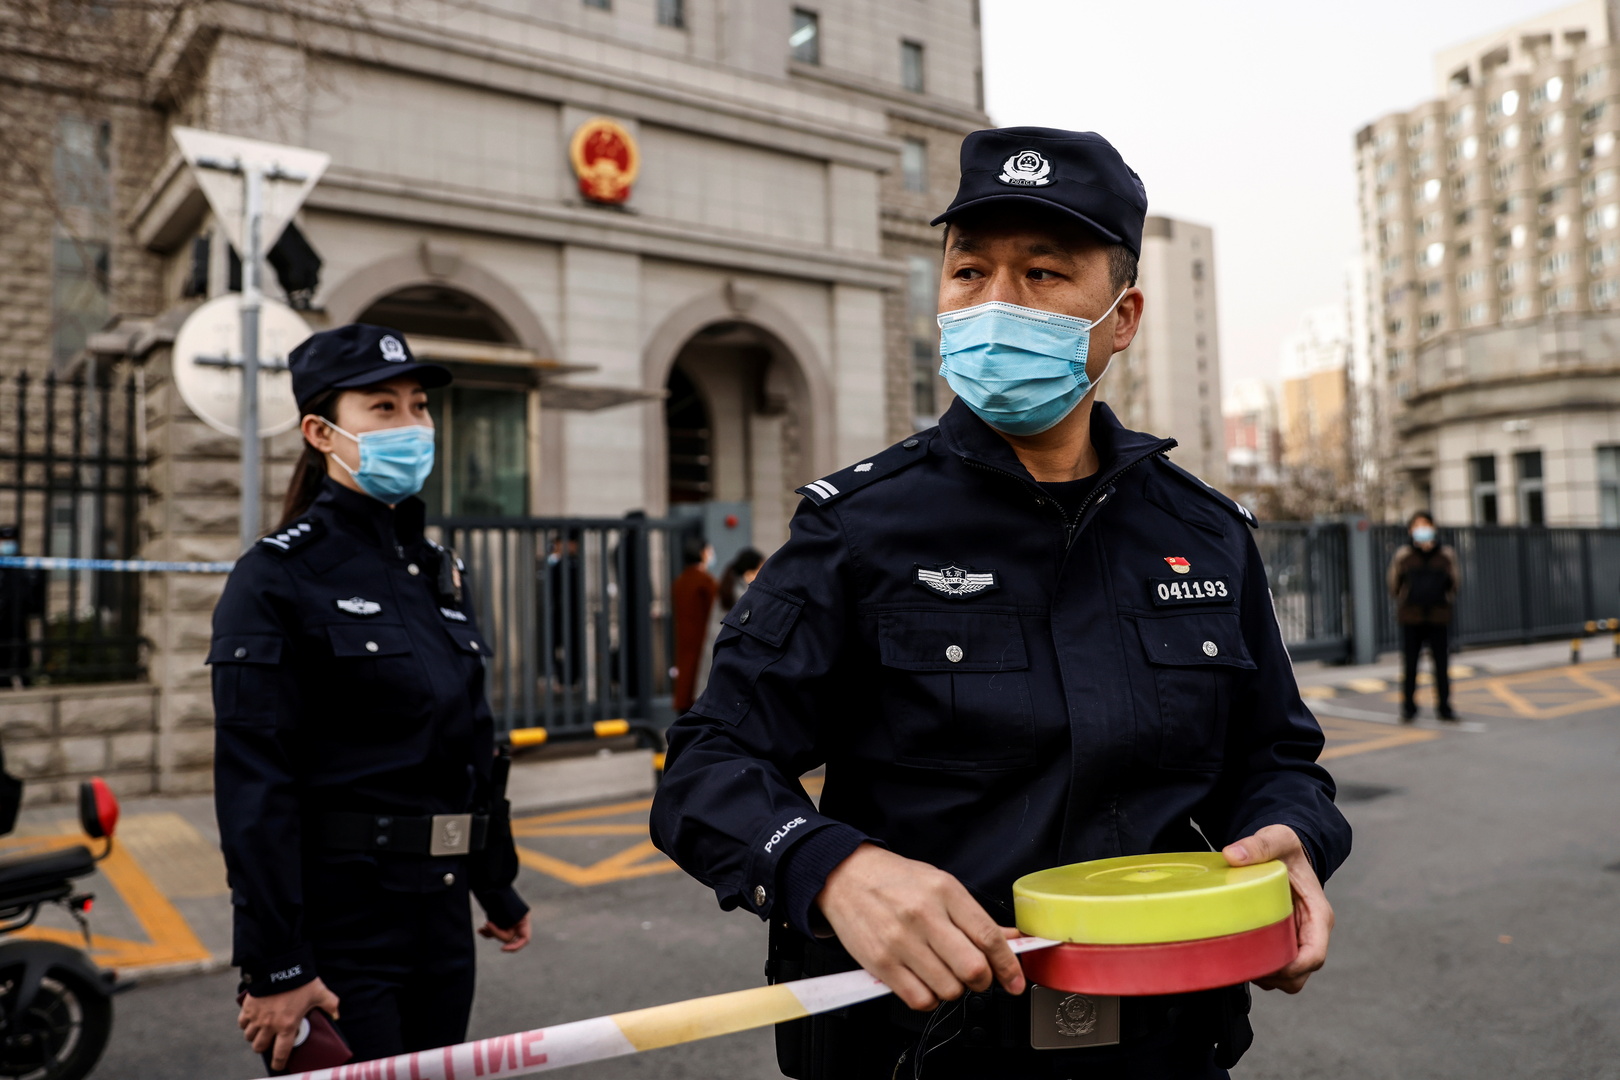 5 قتلى و15 مصابا جراء هجوم بسكين في الصين